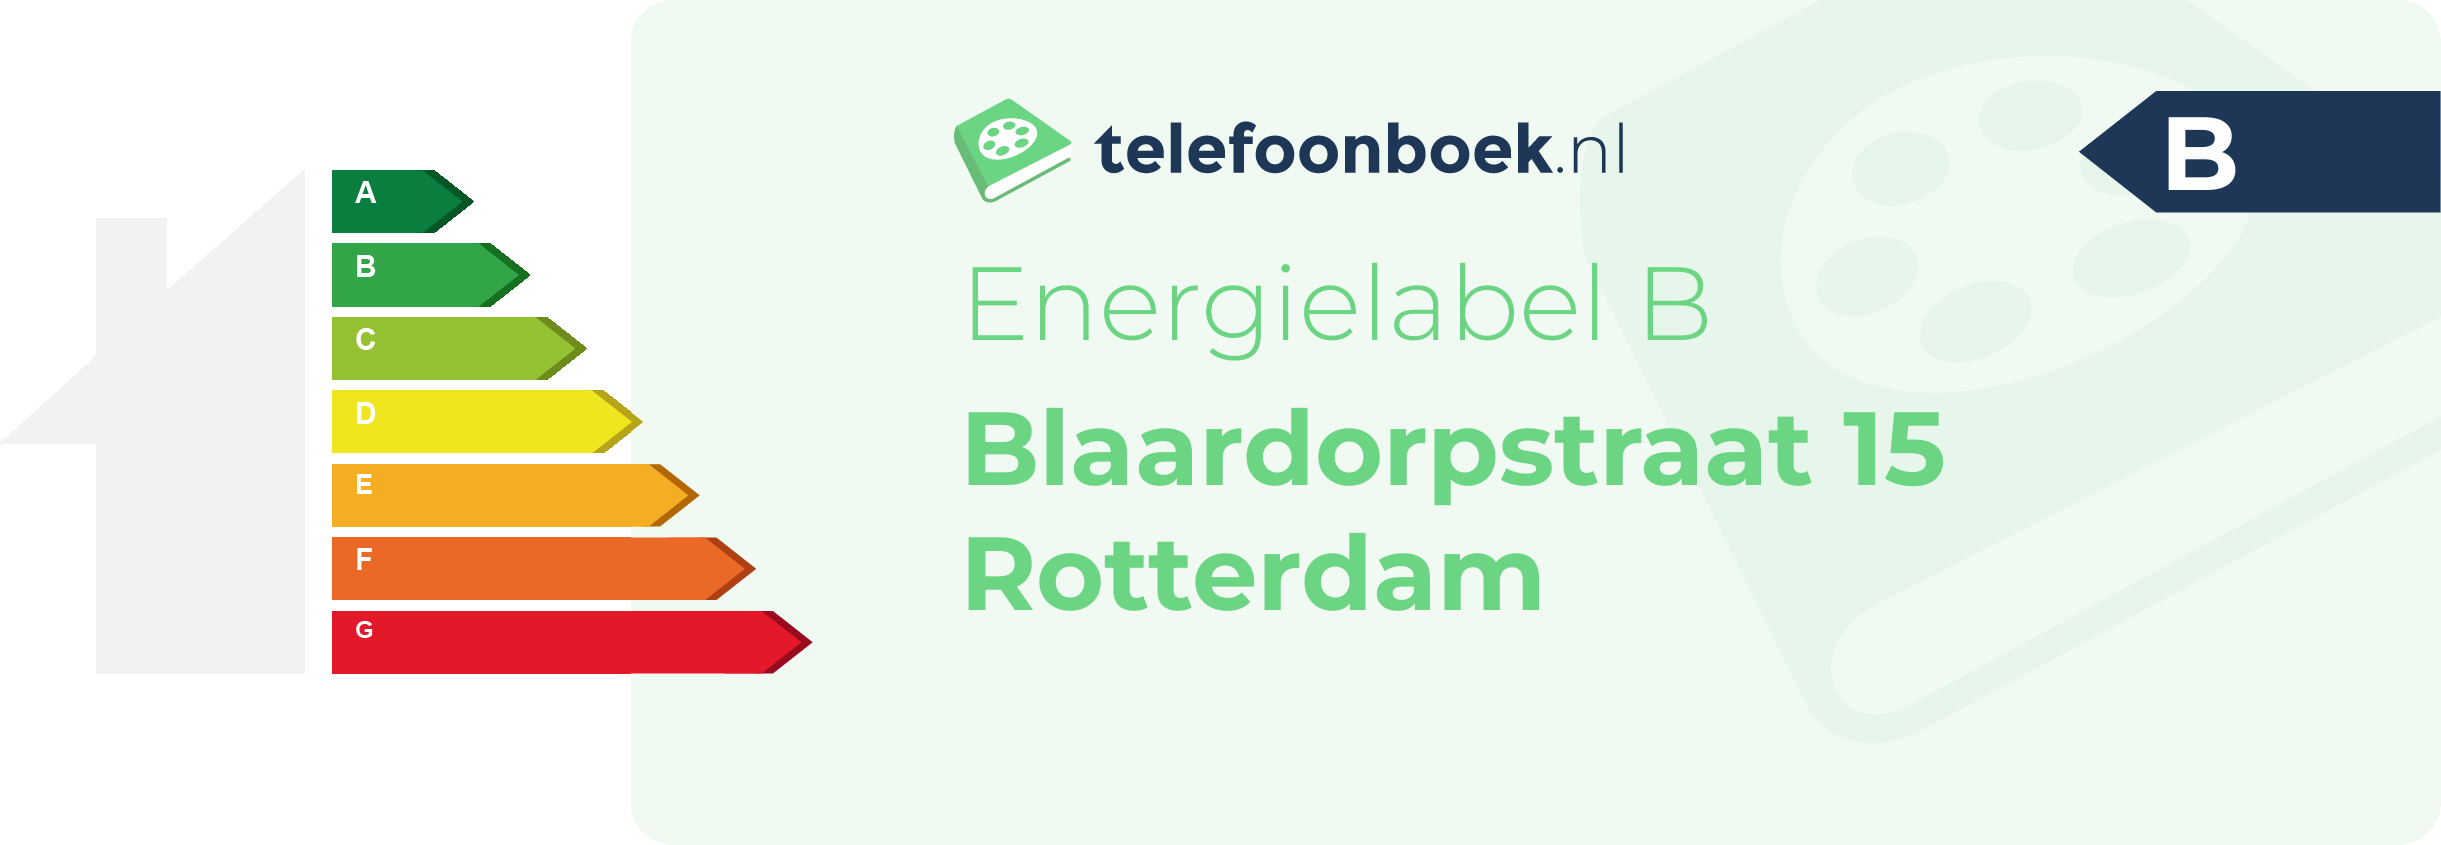 Energielabel Blaardorpstraat 15 Rotterdam